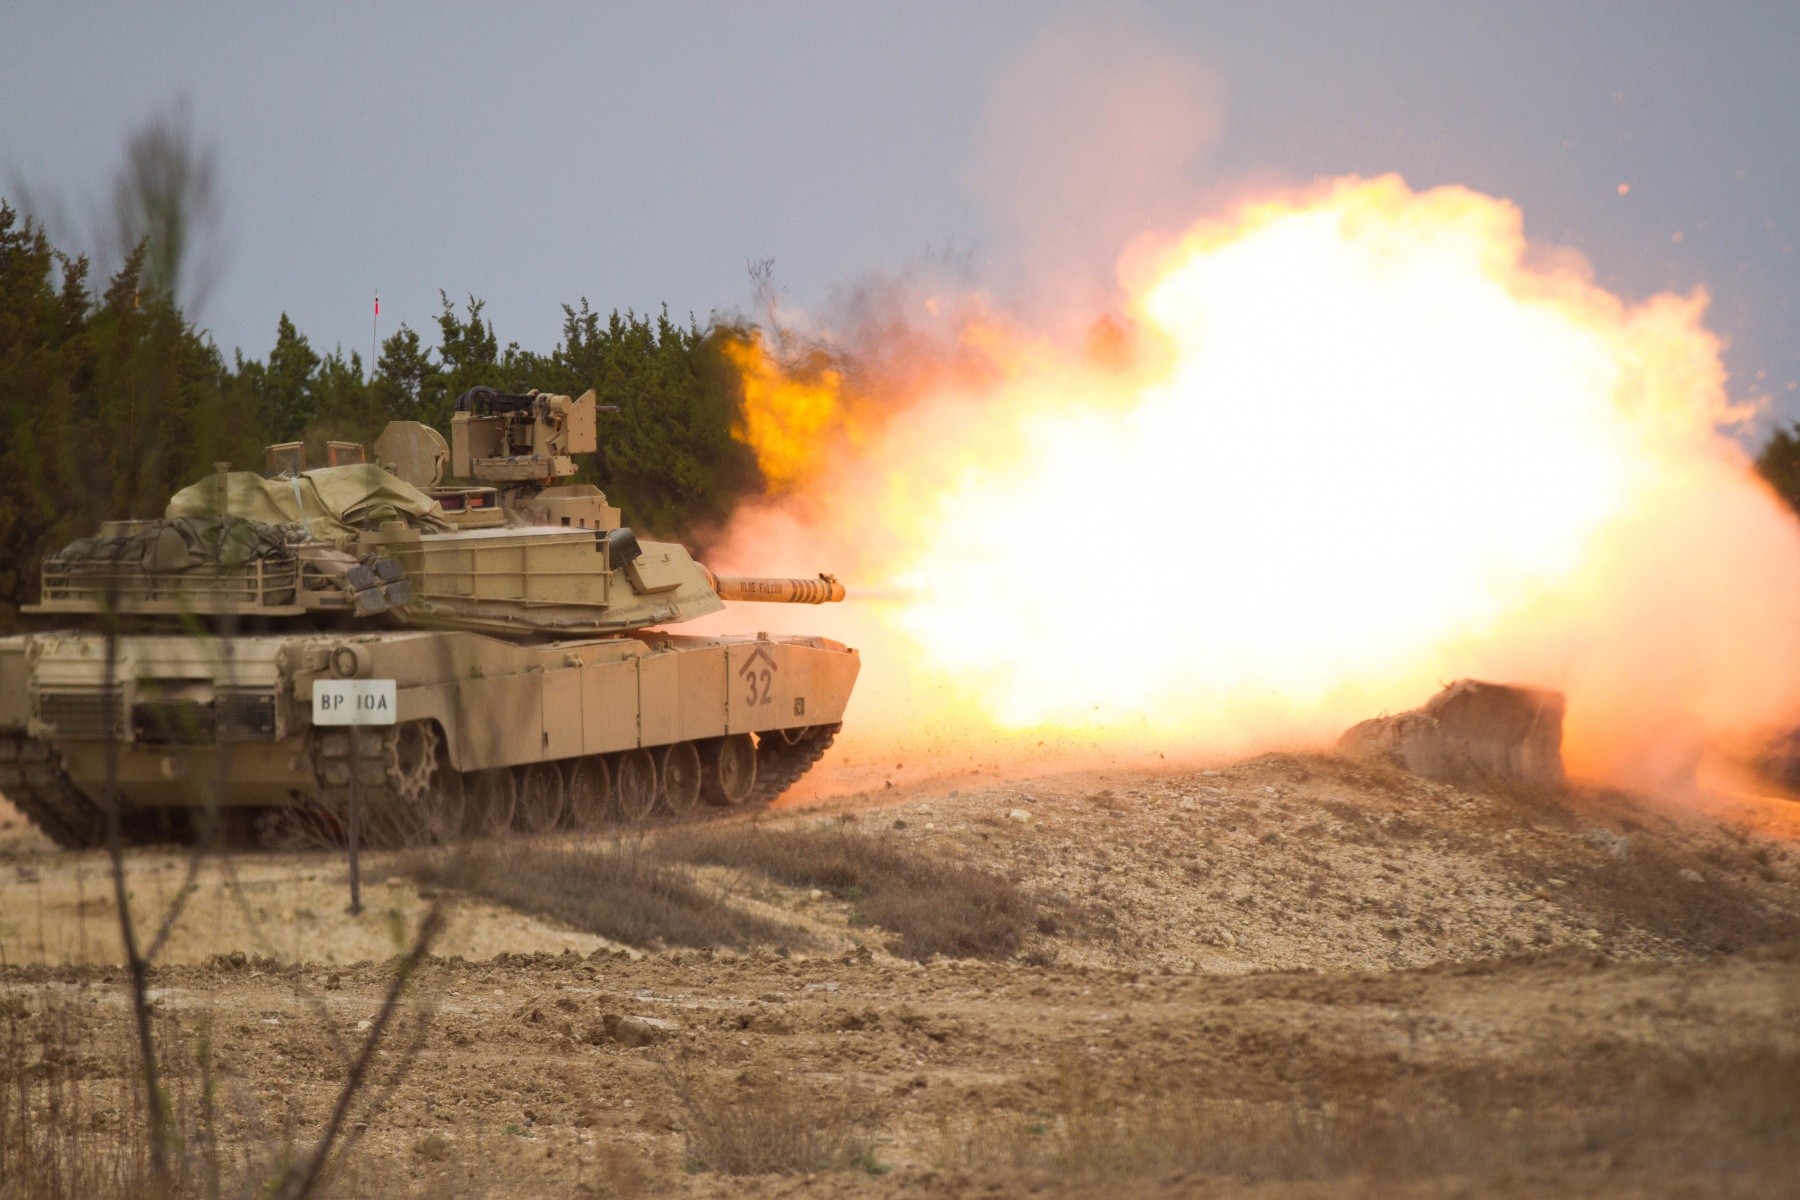 U.S Army • 3rd Brigade “Greywolf” • Abrams Tanks Live Fire • Kuwait